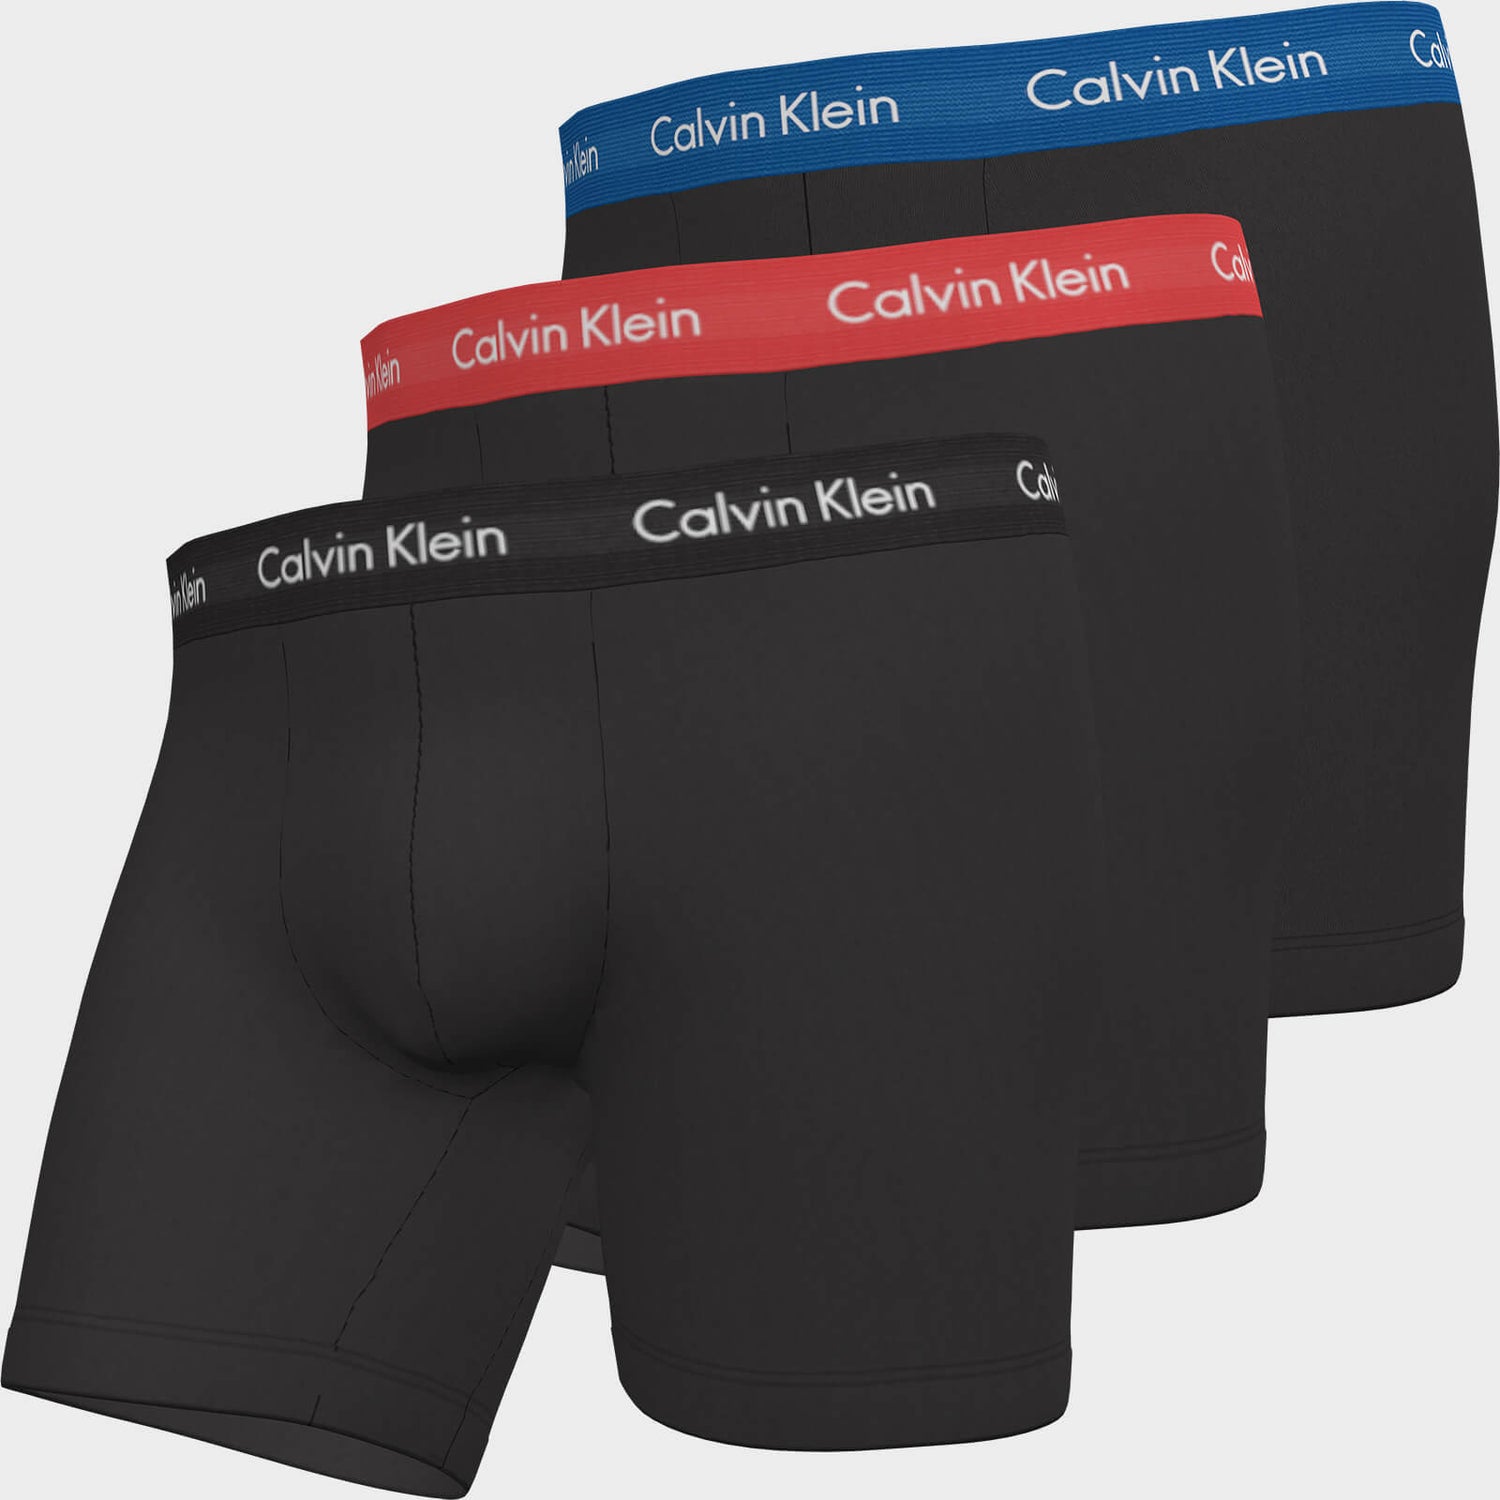 Calvin Klein Men's Cotton Stretch 3 Pack Boxer Briefs - B-Blue/Strawberry Field/Black